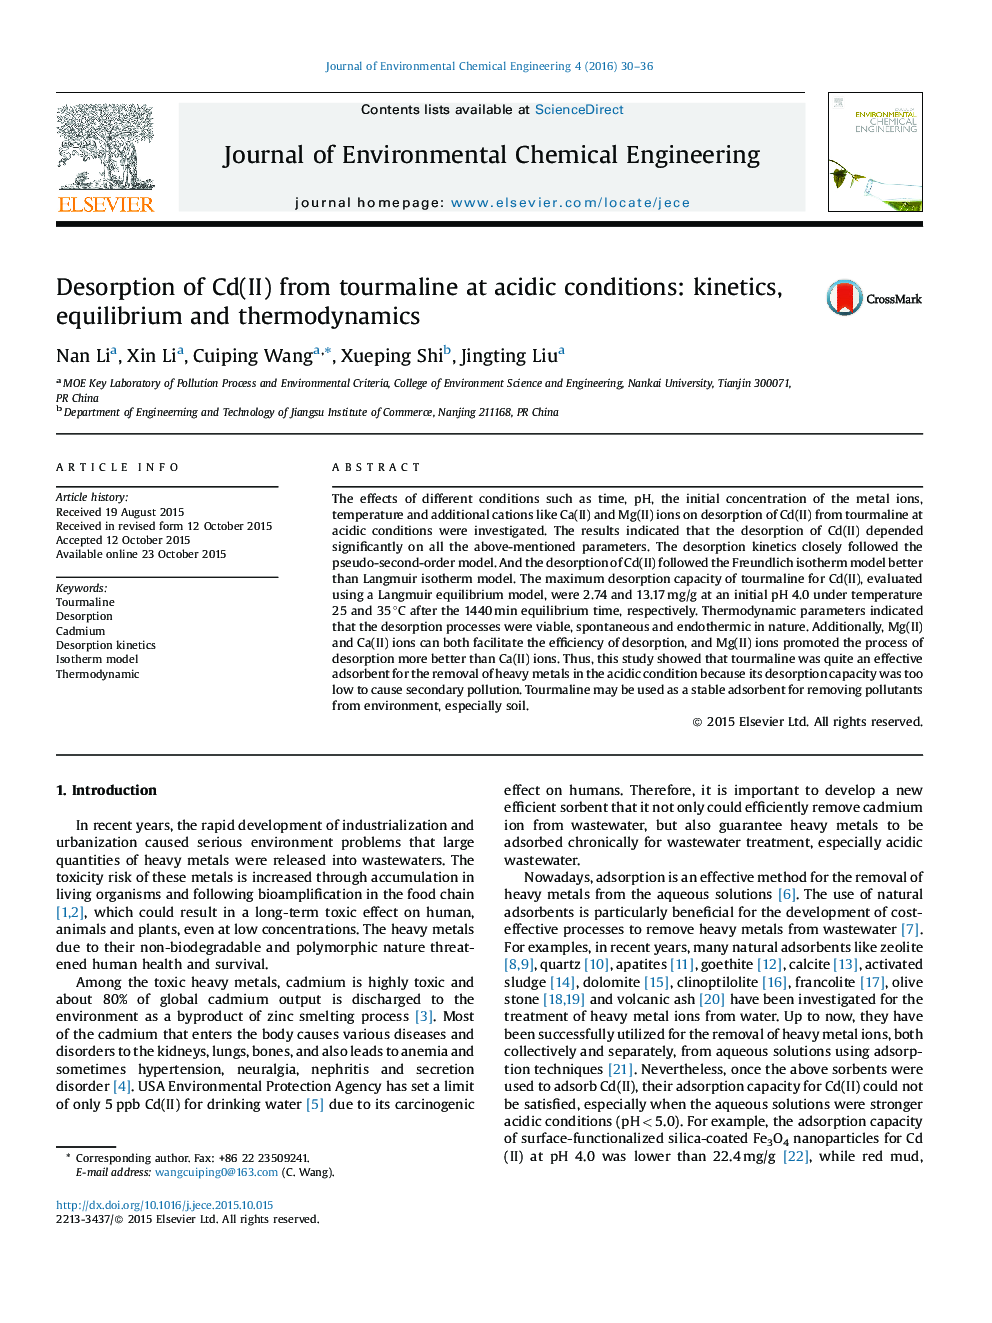 دفع Cd(II) از تورمالین در شرایط اسیدی: سینتیک، تعادل و ترمودینامیک